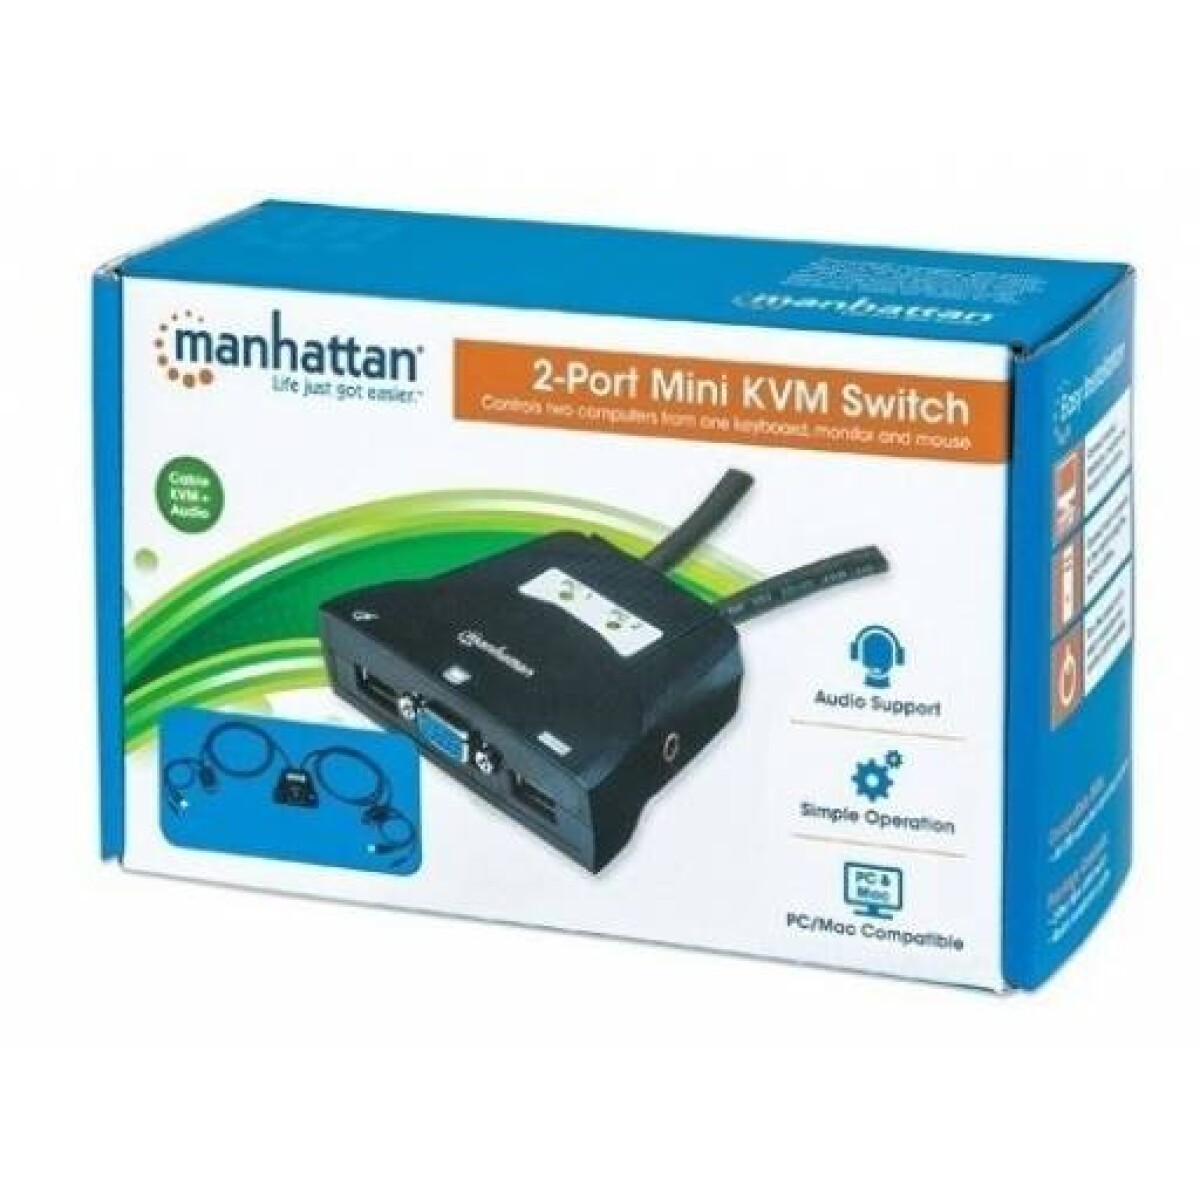 KVM para 2 PC | VGA y USB | c/Audio | Manhattan - Kvm Para 2 Pc | Vga Y Usb | C/audio | Manhattan 